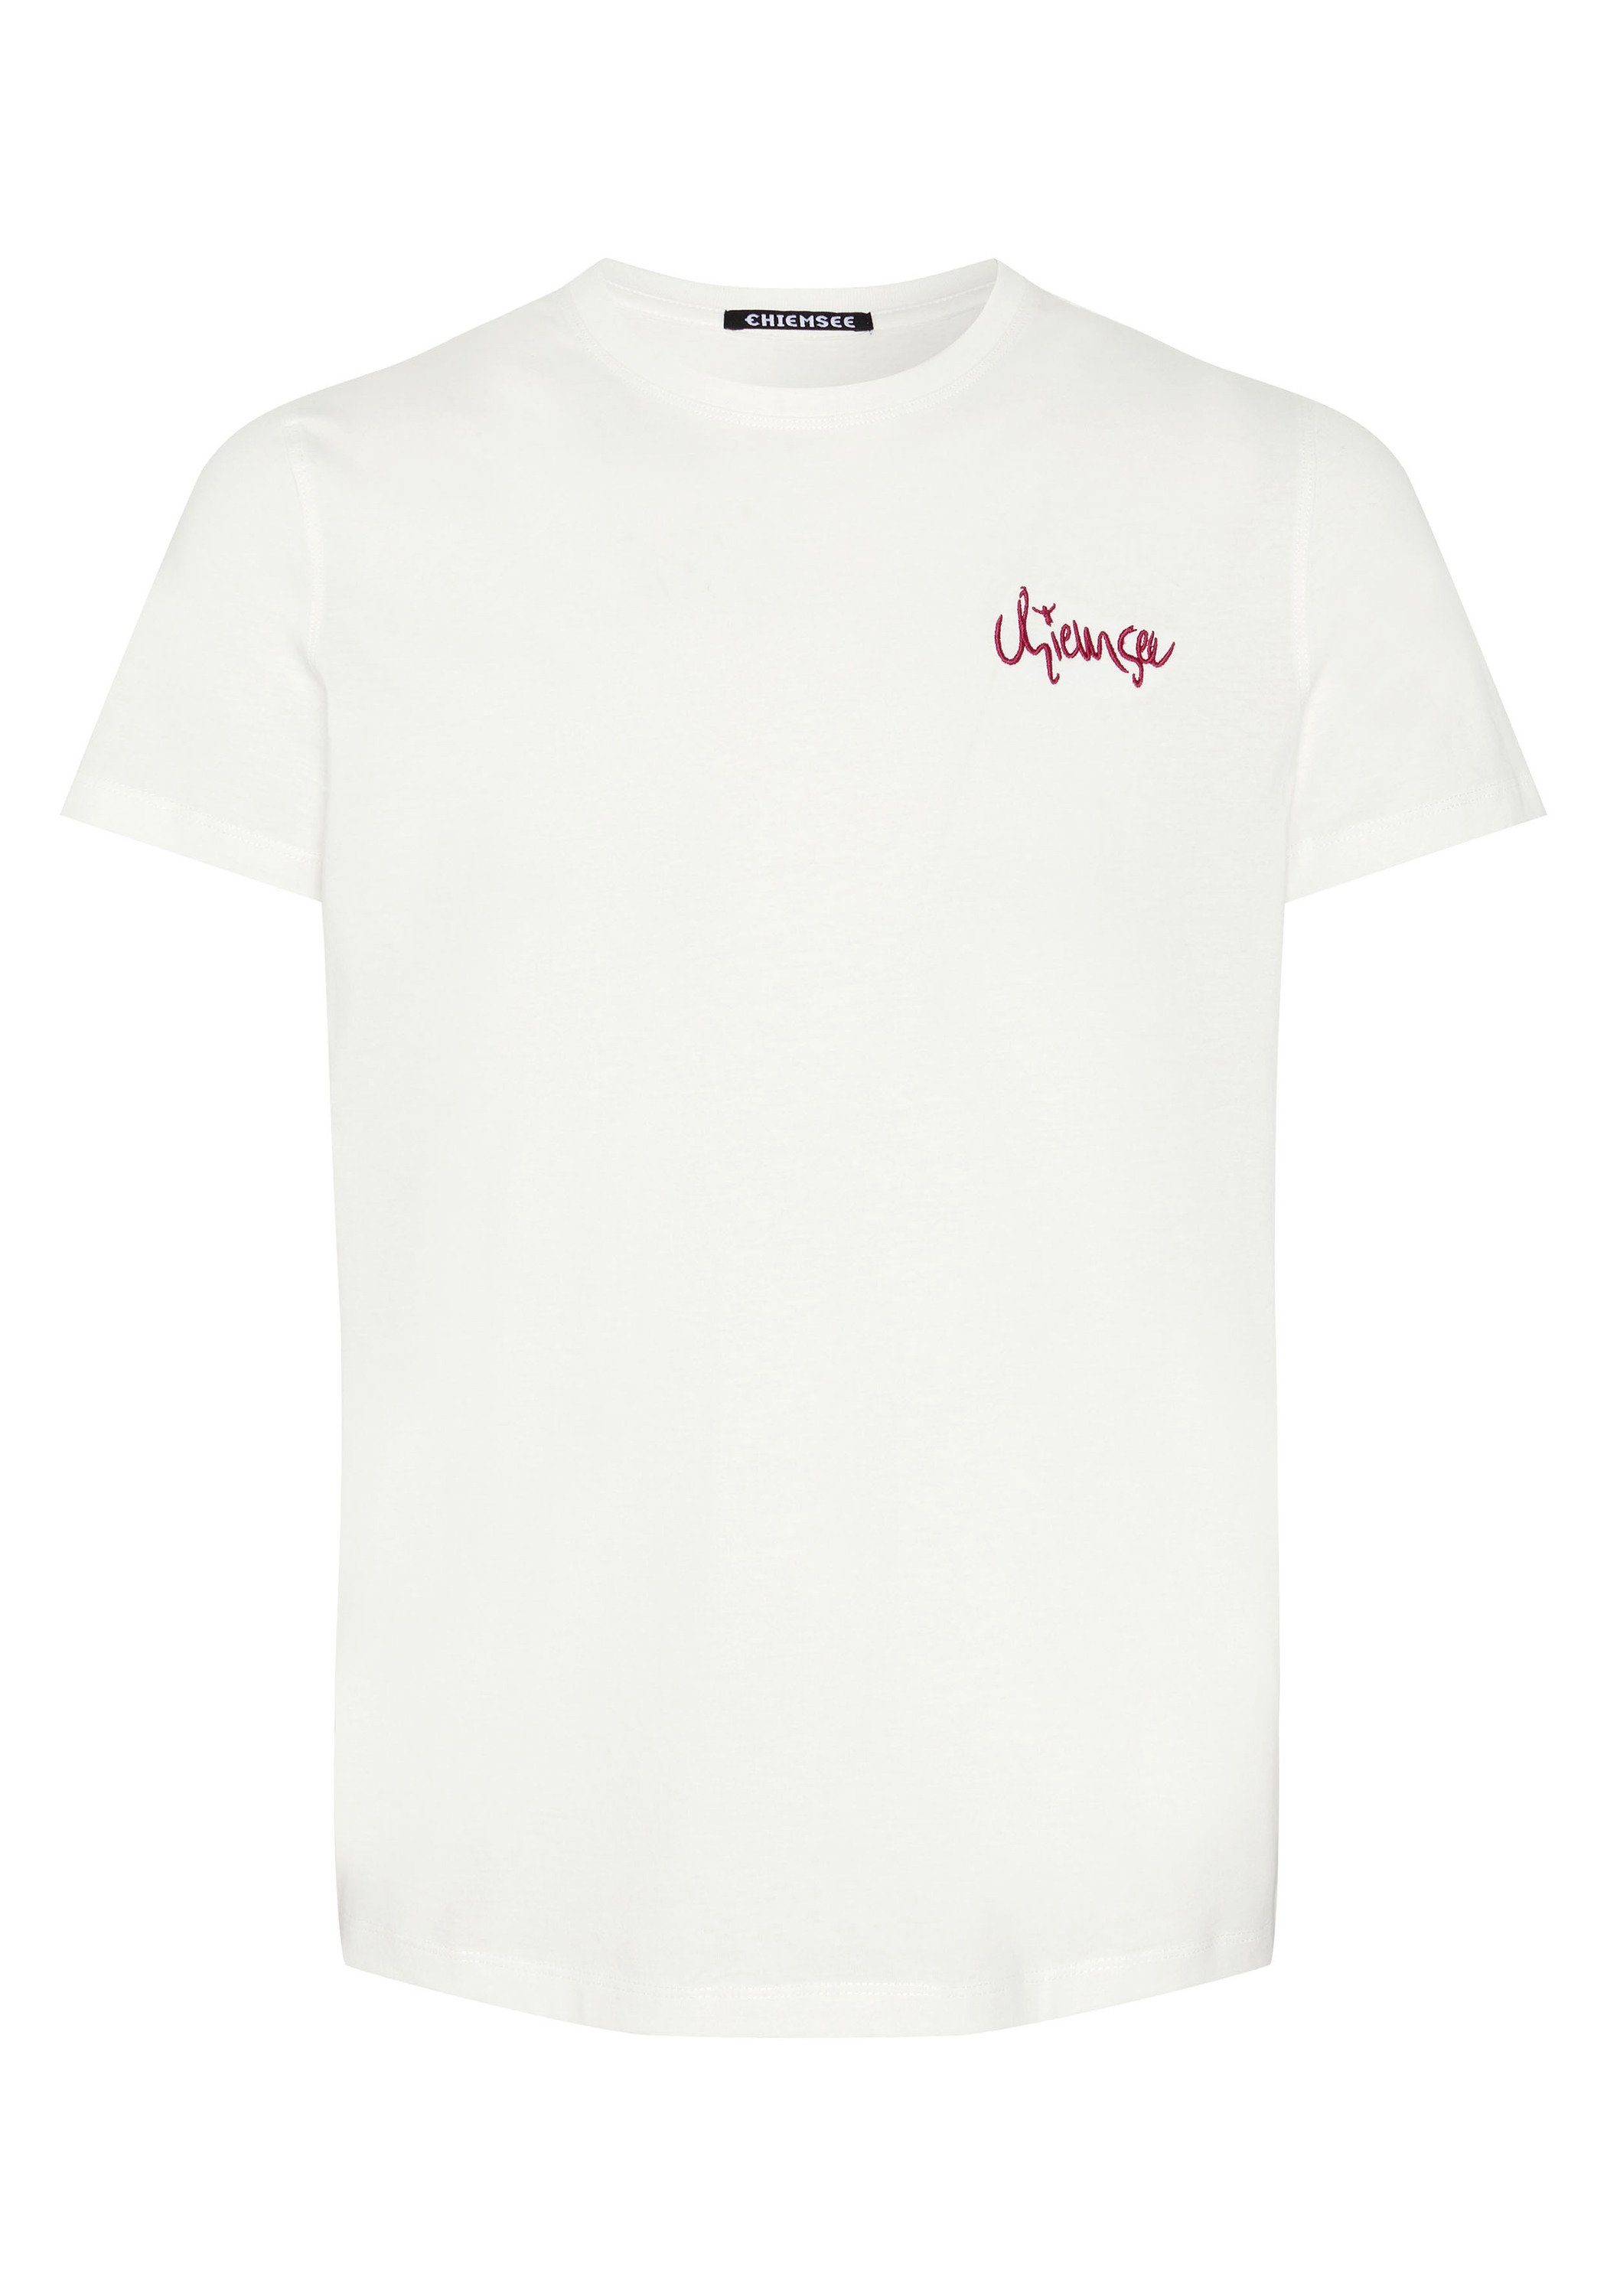 Chiemsee Print-Shirt T-Shirt mit Blattmotiv und Schriftzug 1 Star White